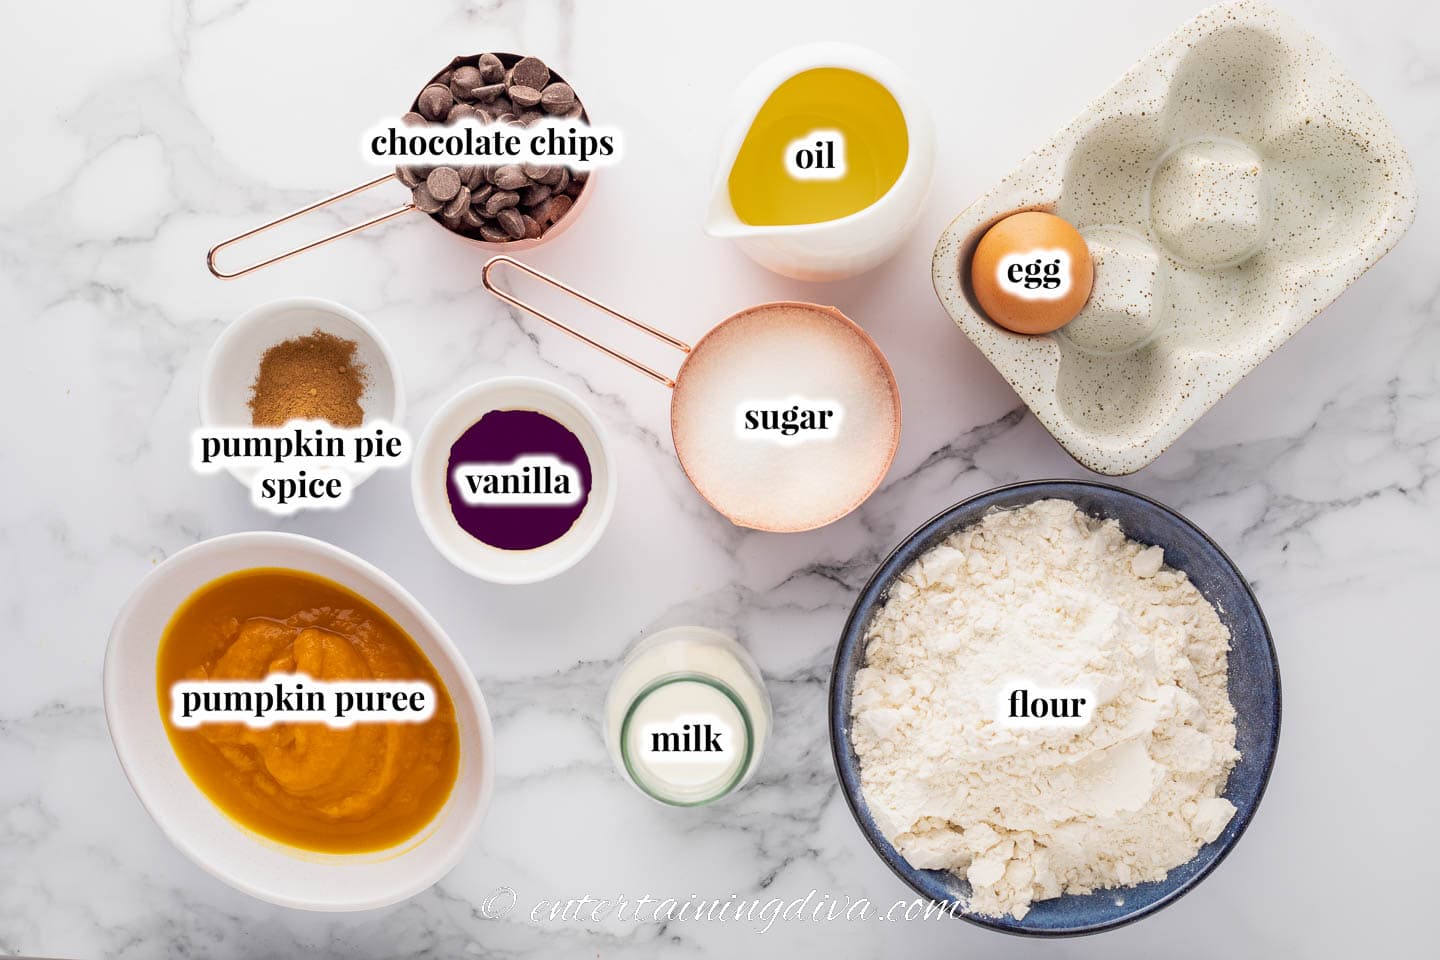 ingredients for pumpkin chocolate chip muffins - flour, sugar, milk, chocolate chips, pumpkin puree, egg, oil, vanilla, pumpkin pie spice